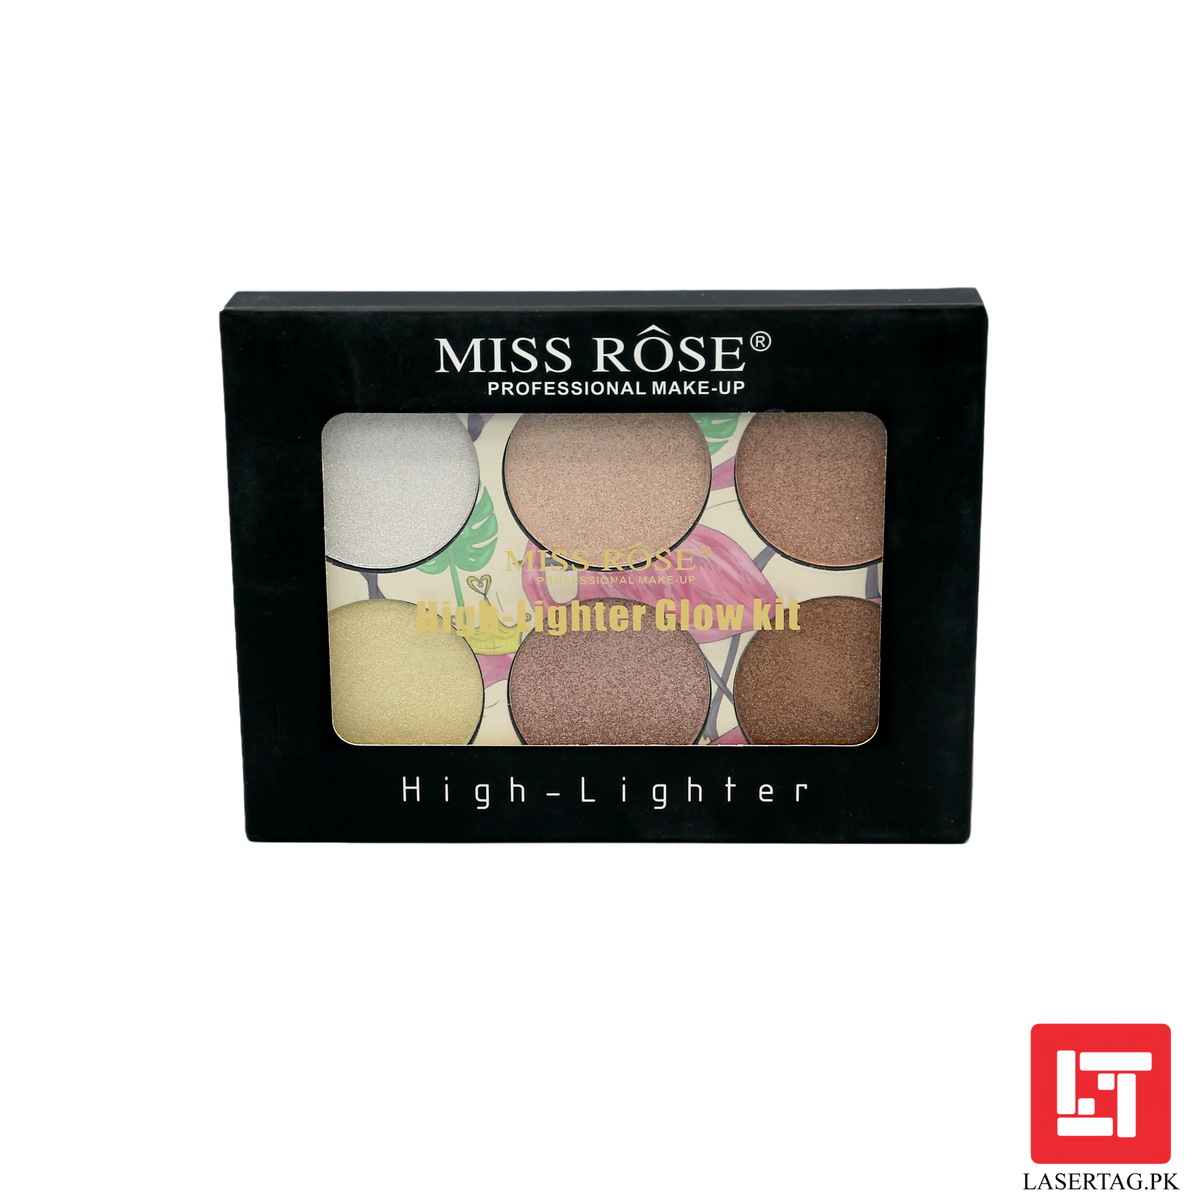 Miss Rose High Lighter Glow Kit Palette 7003-025N1 freeshipping - lasertag.pk